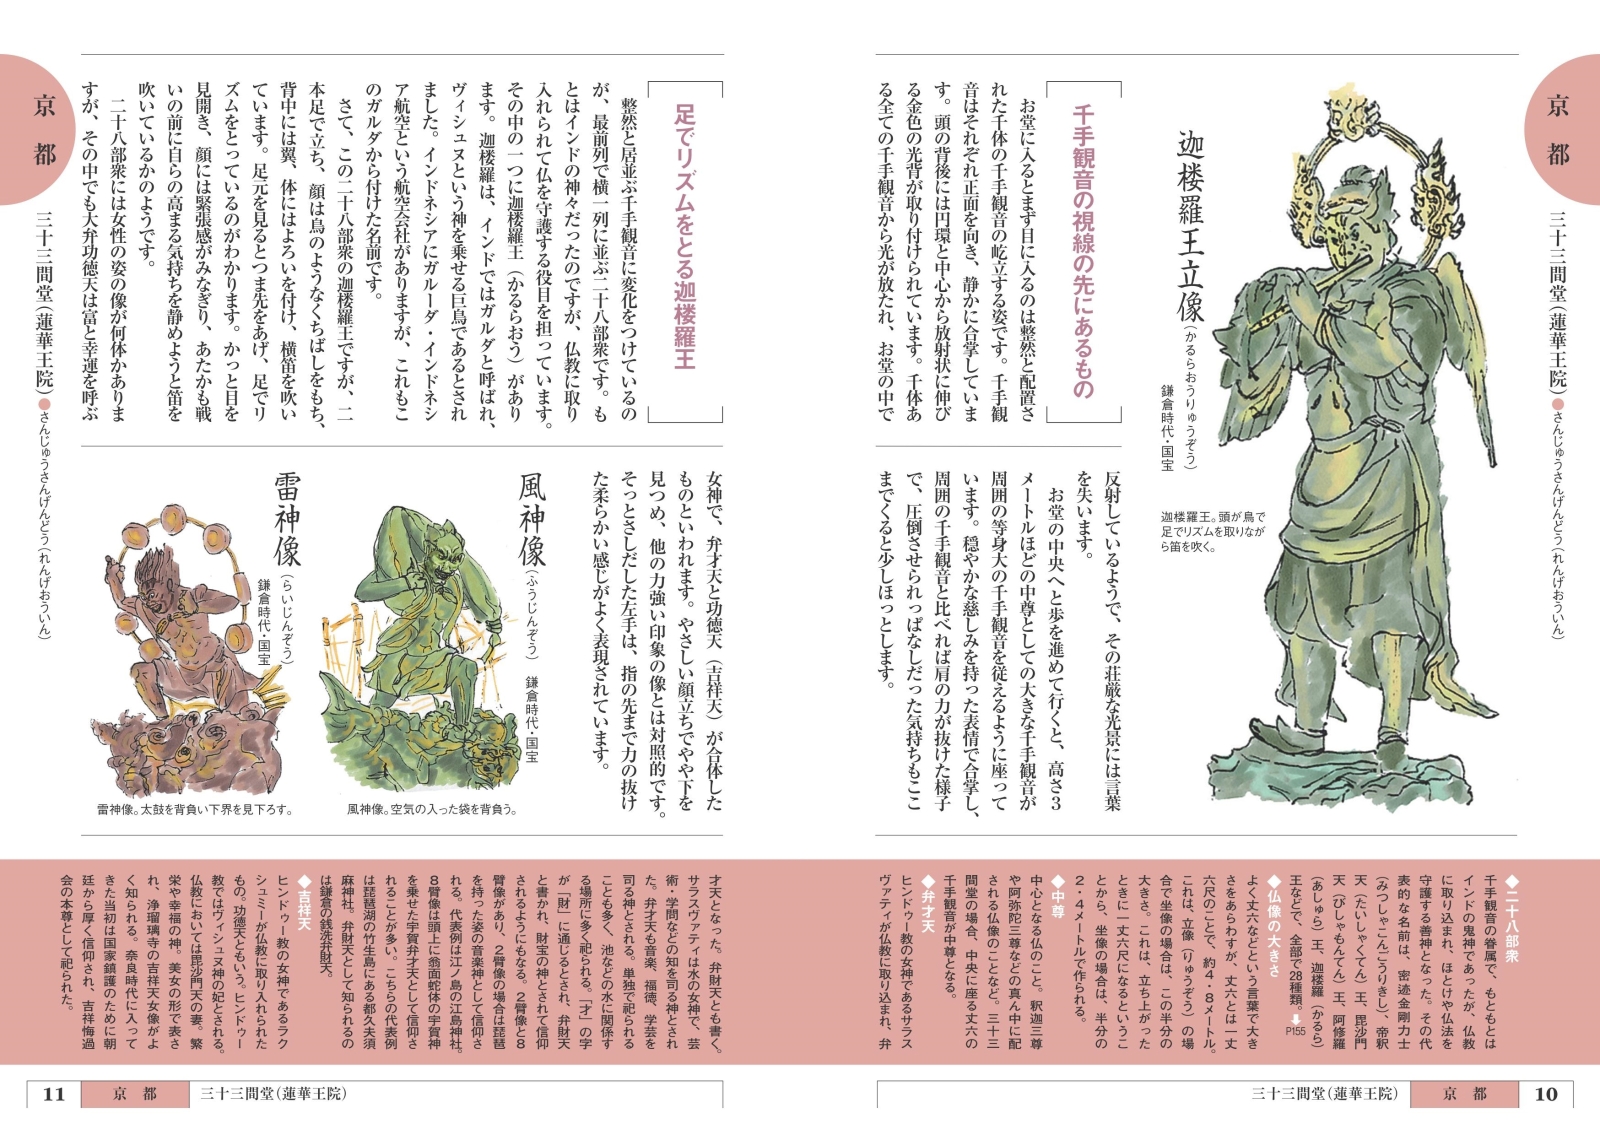 楽天ブックス イラストガイド 京都 奈良のお寺で仏像に会いましょう 改訂版 福岡 秀樹 本